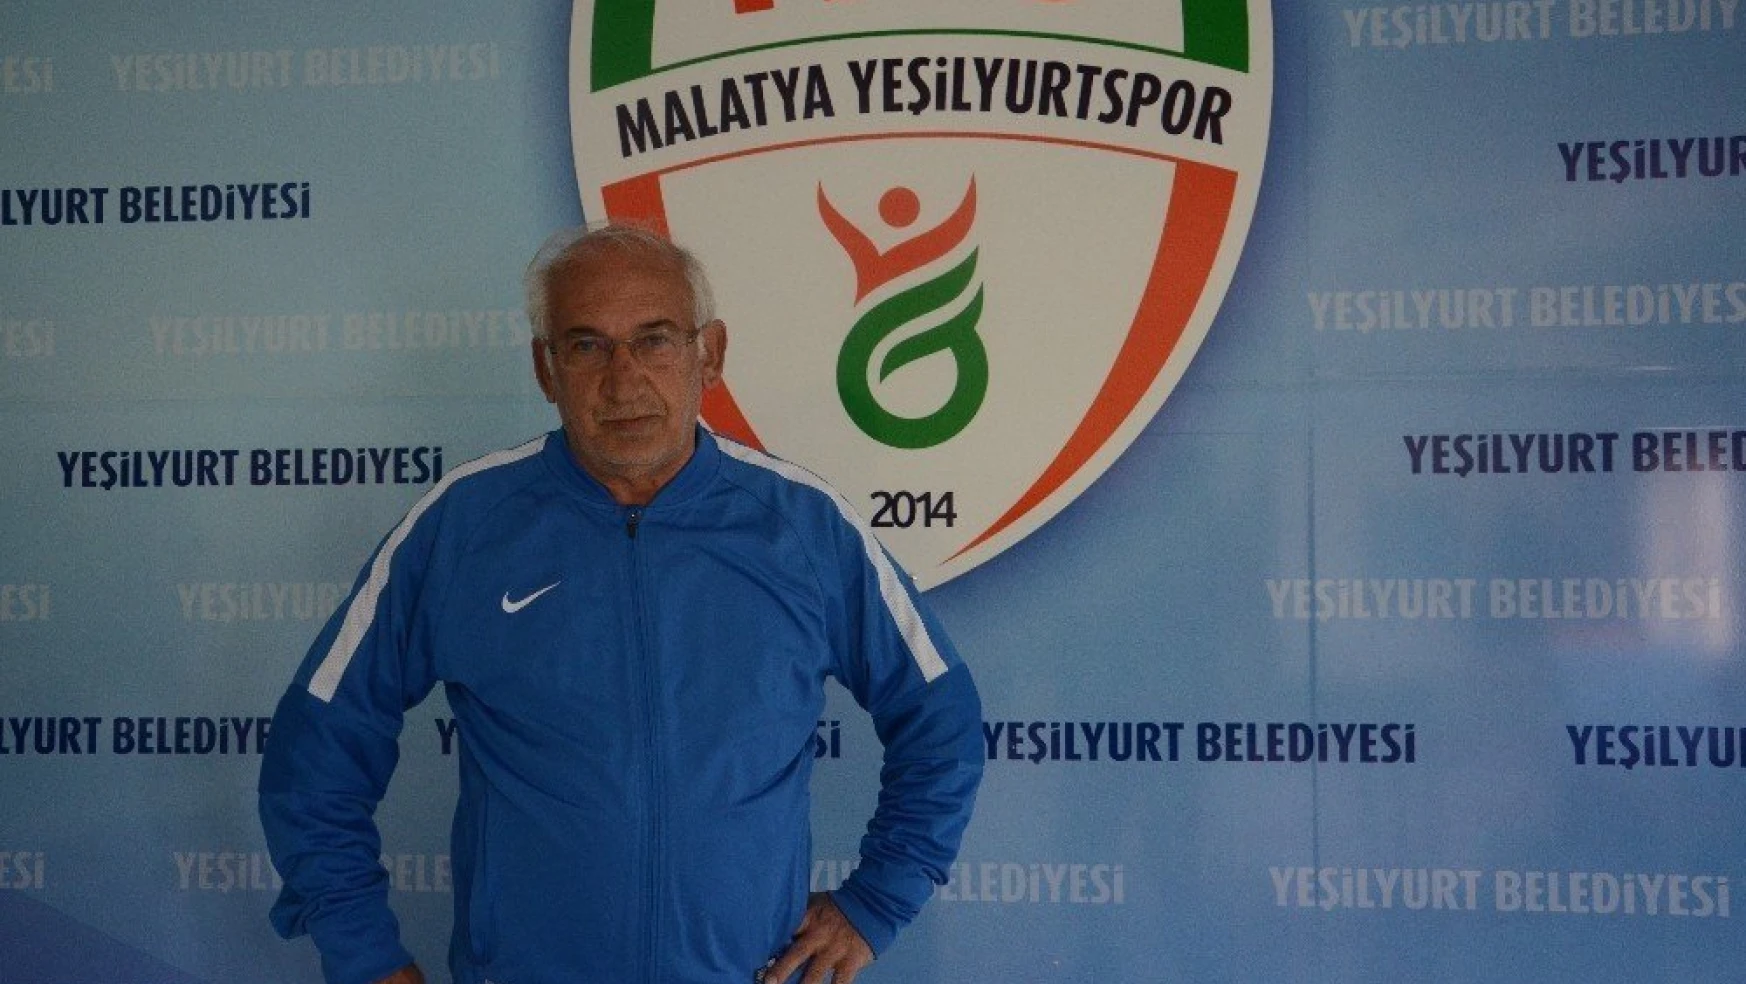 Malatya Yeşilyurt Belediyespor İsmail Tekin ile devam kararı aldı
